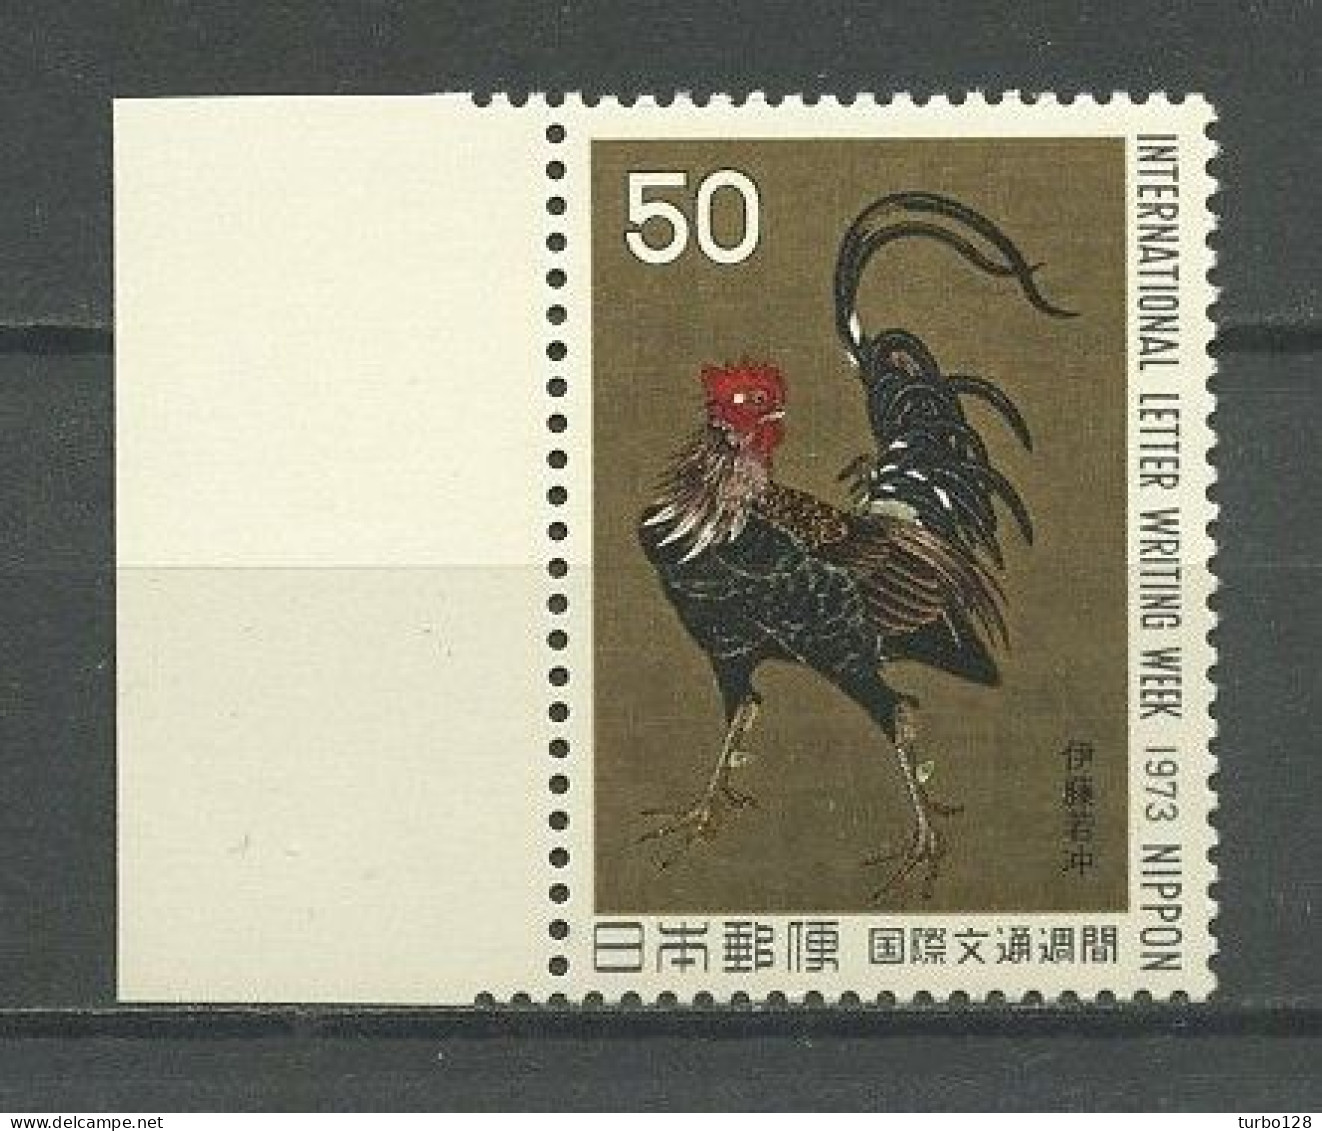 JAPON 1973 N° 1091 ** Neuf MNH Superbe C 1,25 € Faune Oiseaux Coq Guerrier De J. Ito La Lettre Peintures Birds Painting - Unused Stamps